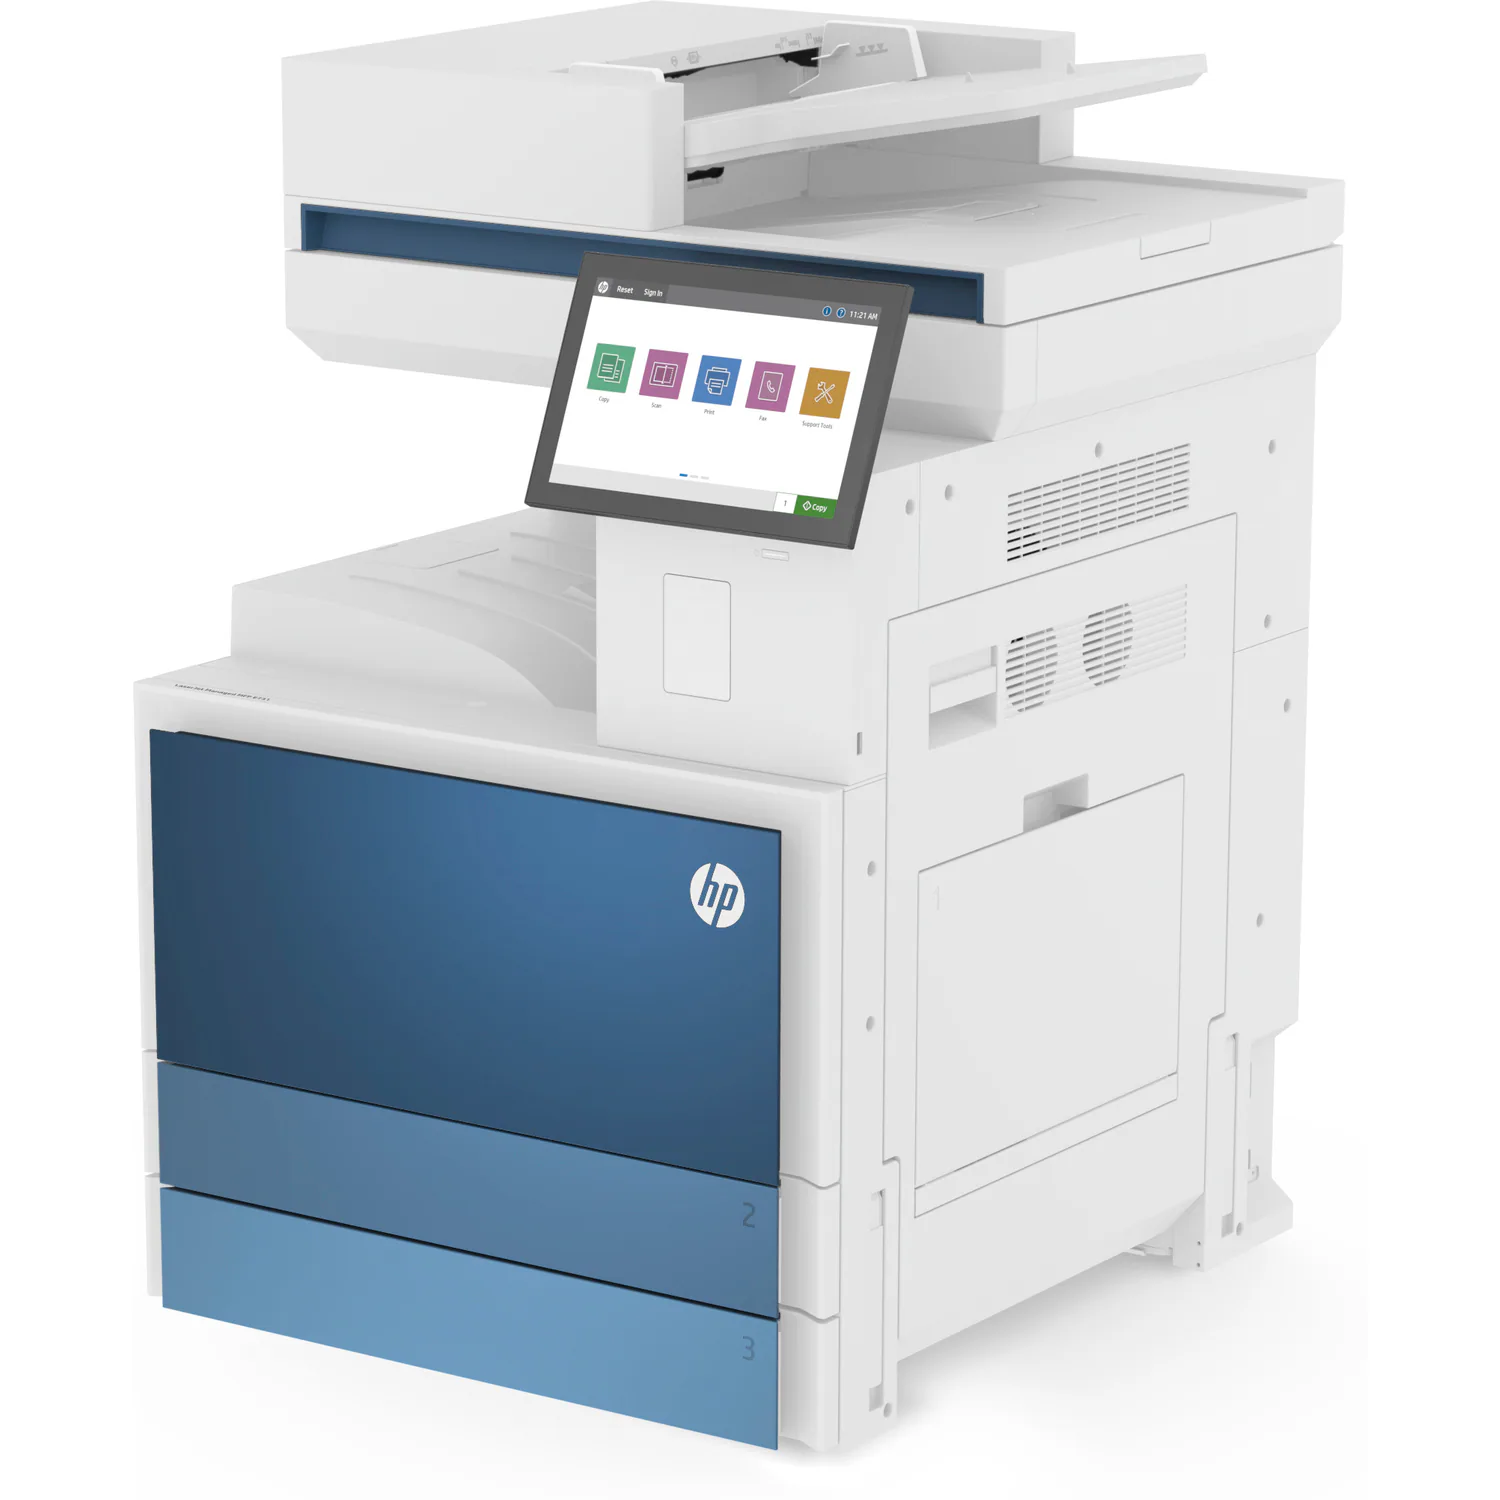 Máy Photocopy đen trắng đa chức năng HP LaserJet Managed MFP E826DN - 5QK09A (50 trang/1 phút)